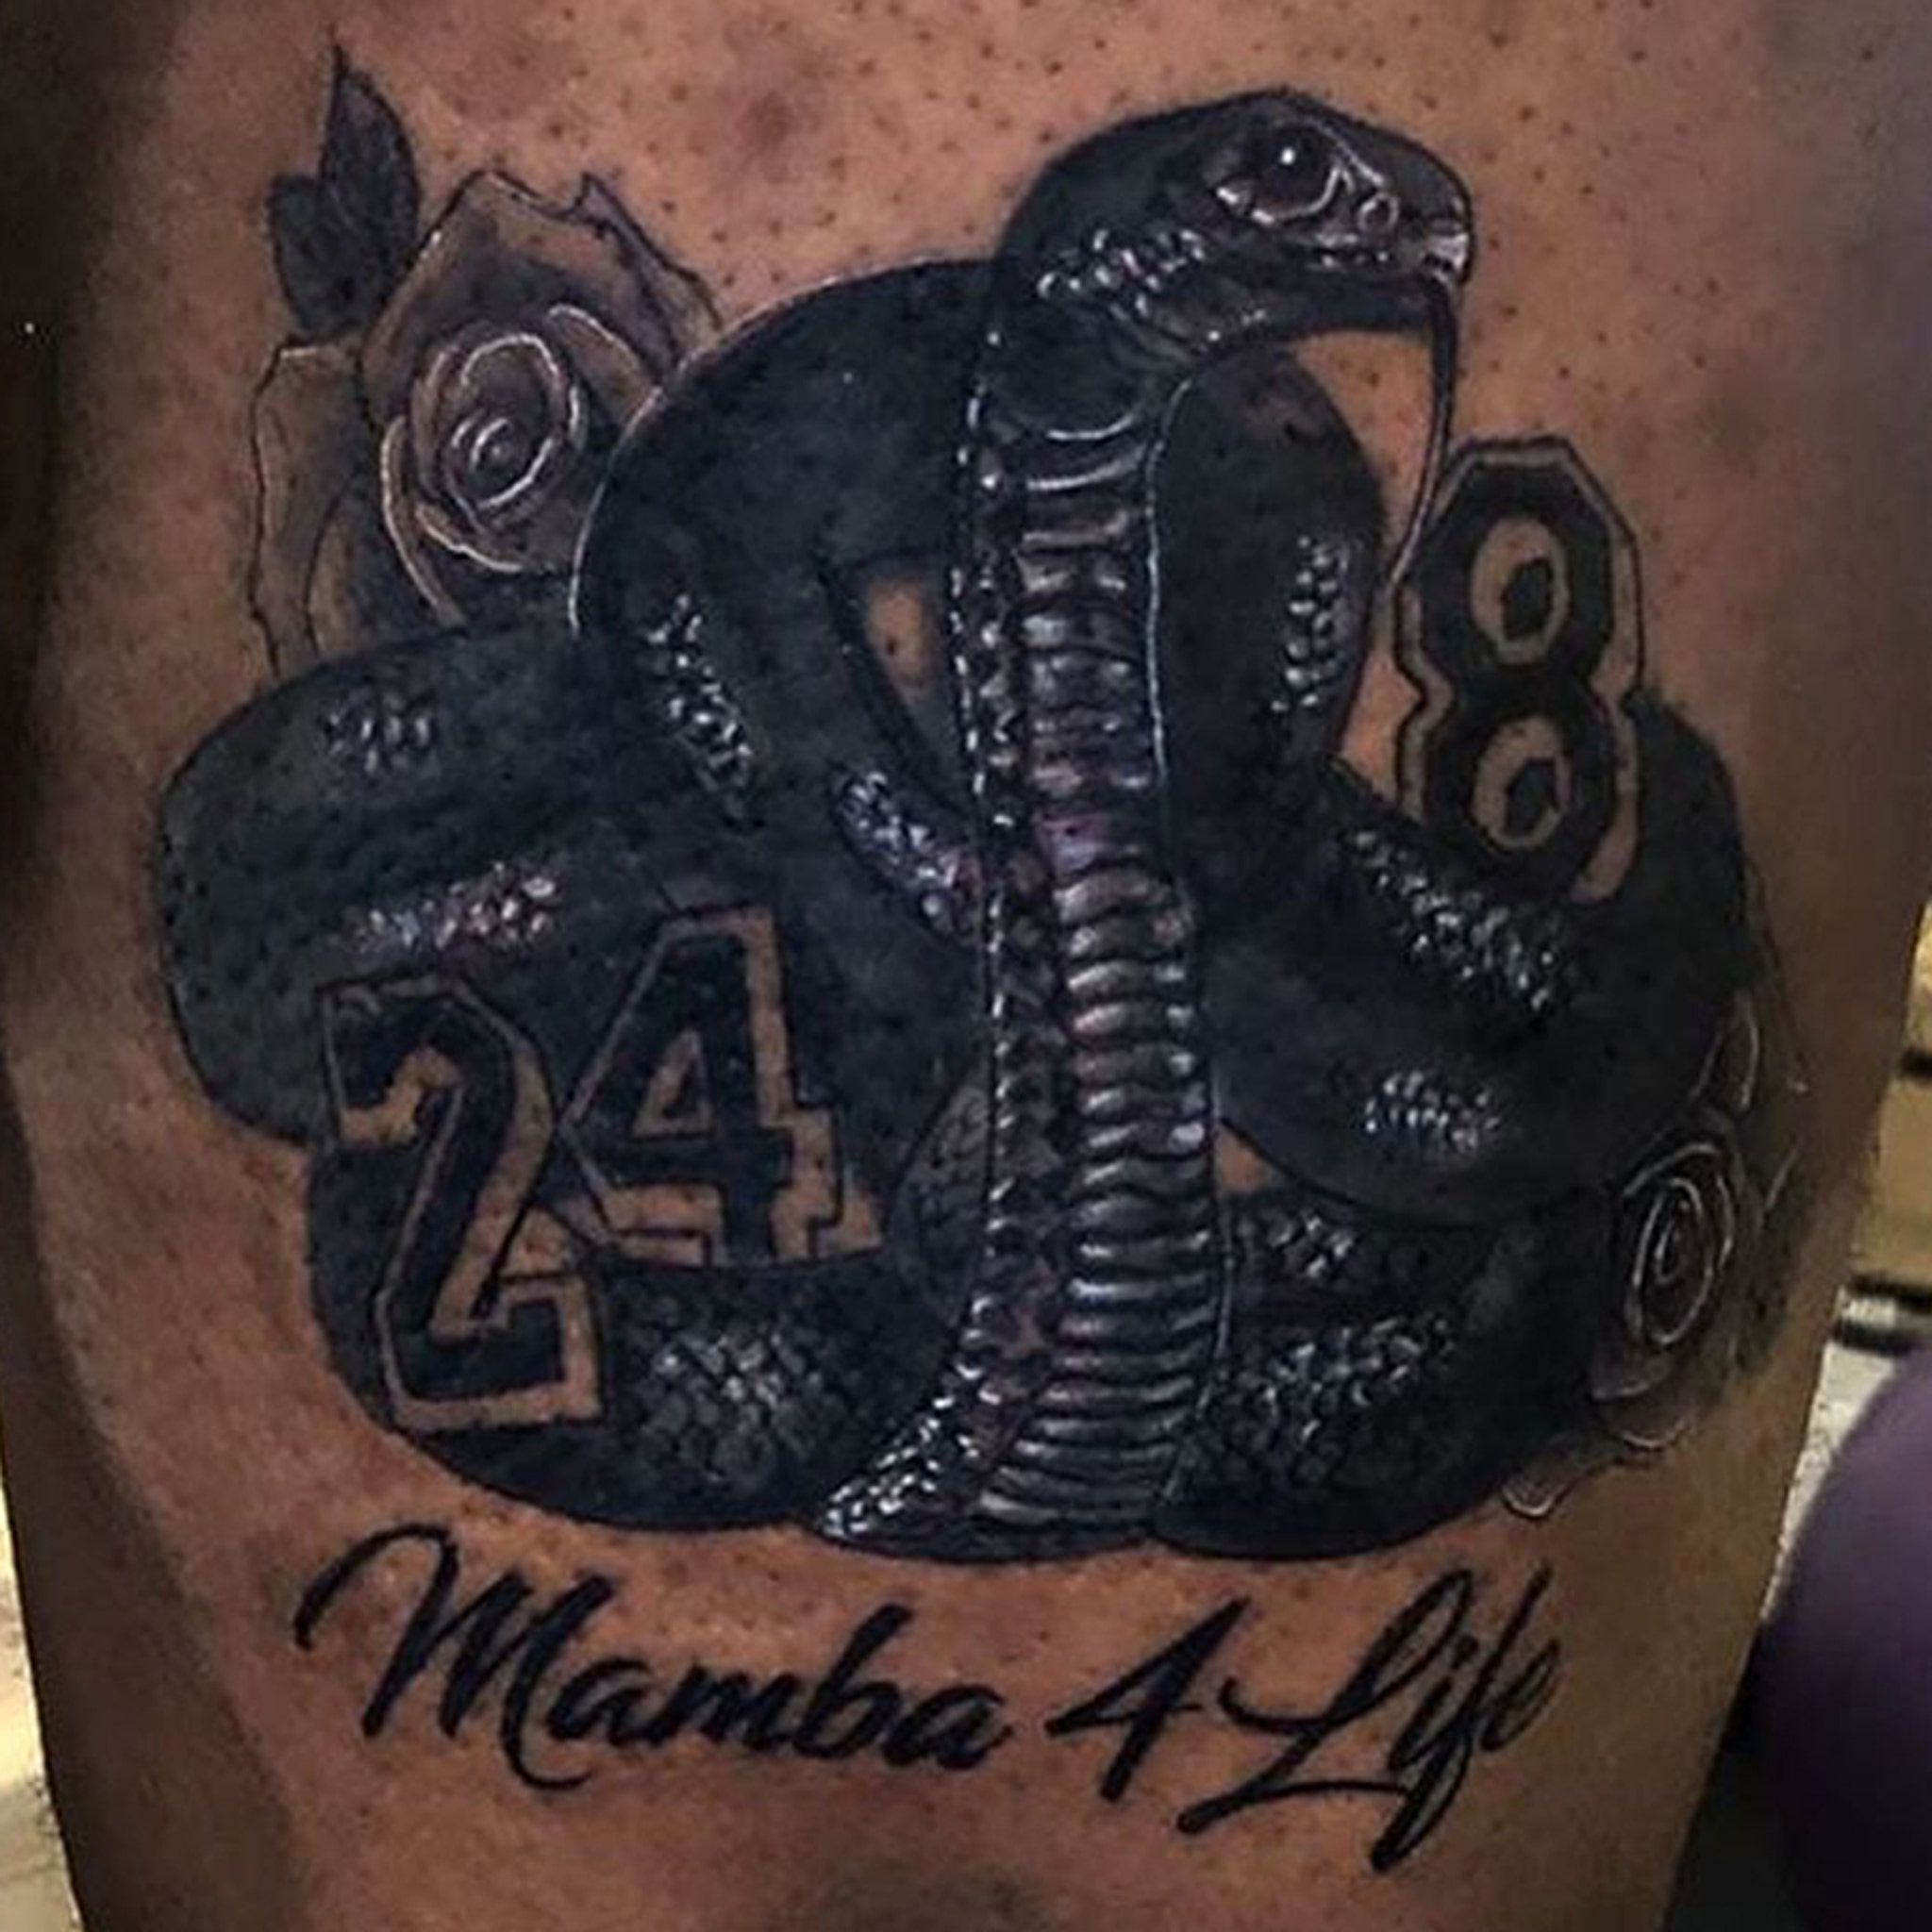 Lebron James' Kobe Bryant Tattoo Revealed, New Detailed Photo